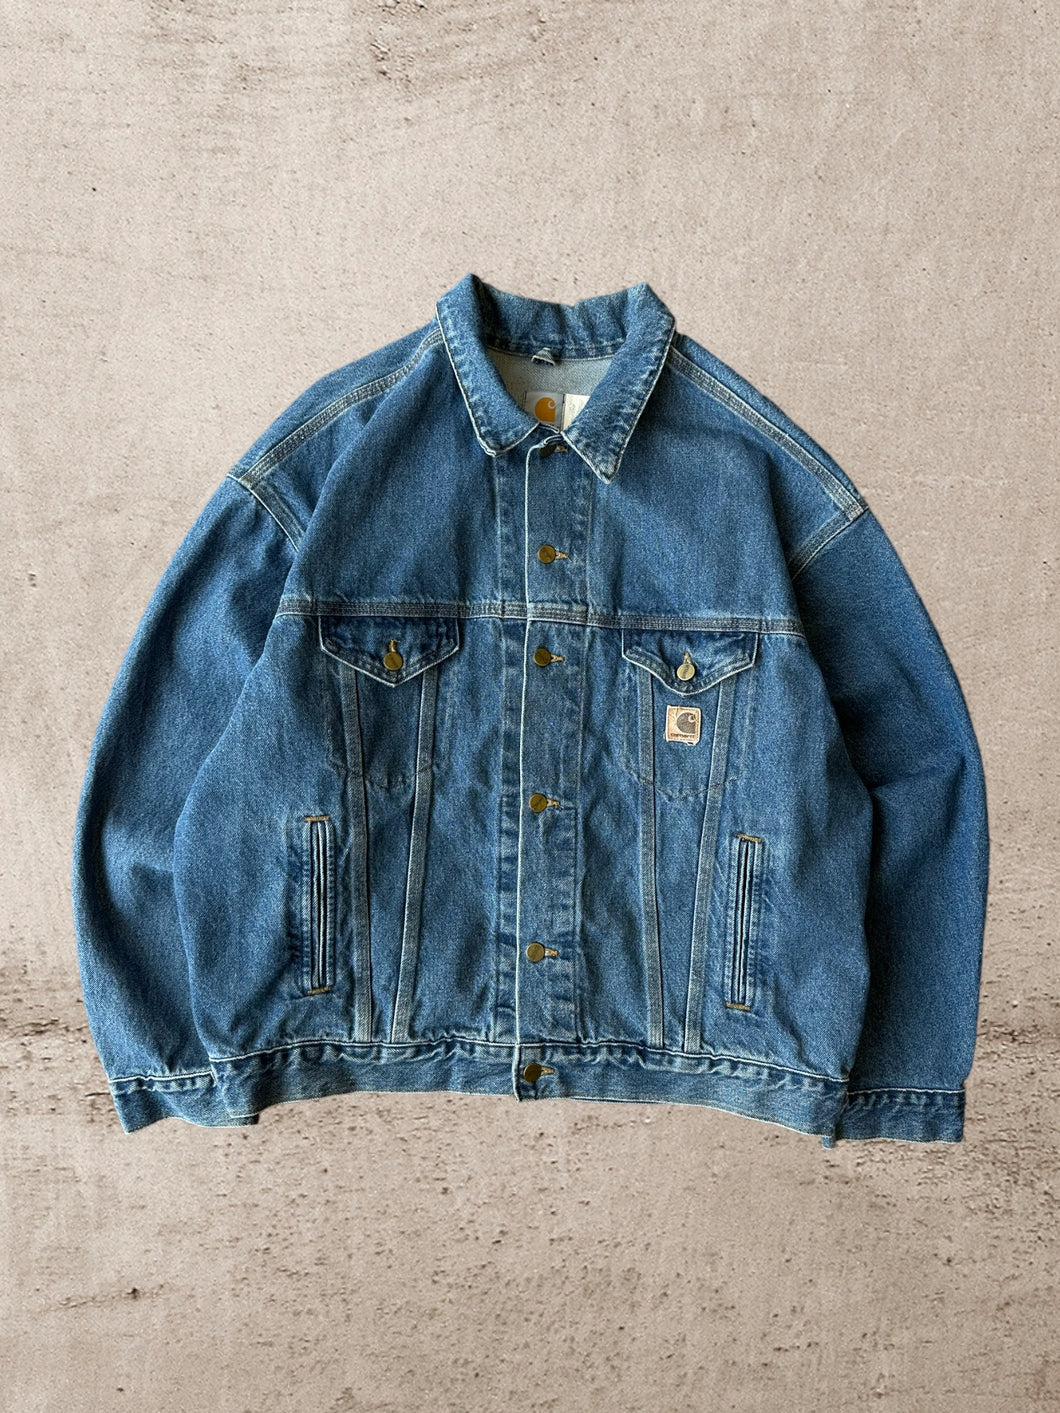 Vintage Carhartt Denim Jacket - XL